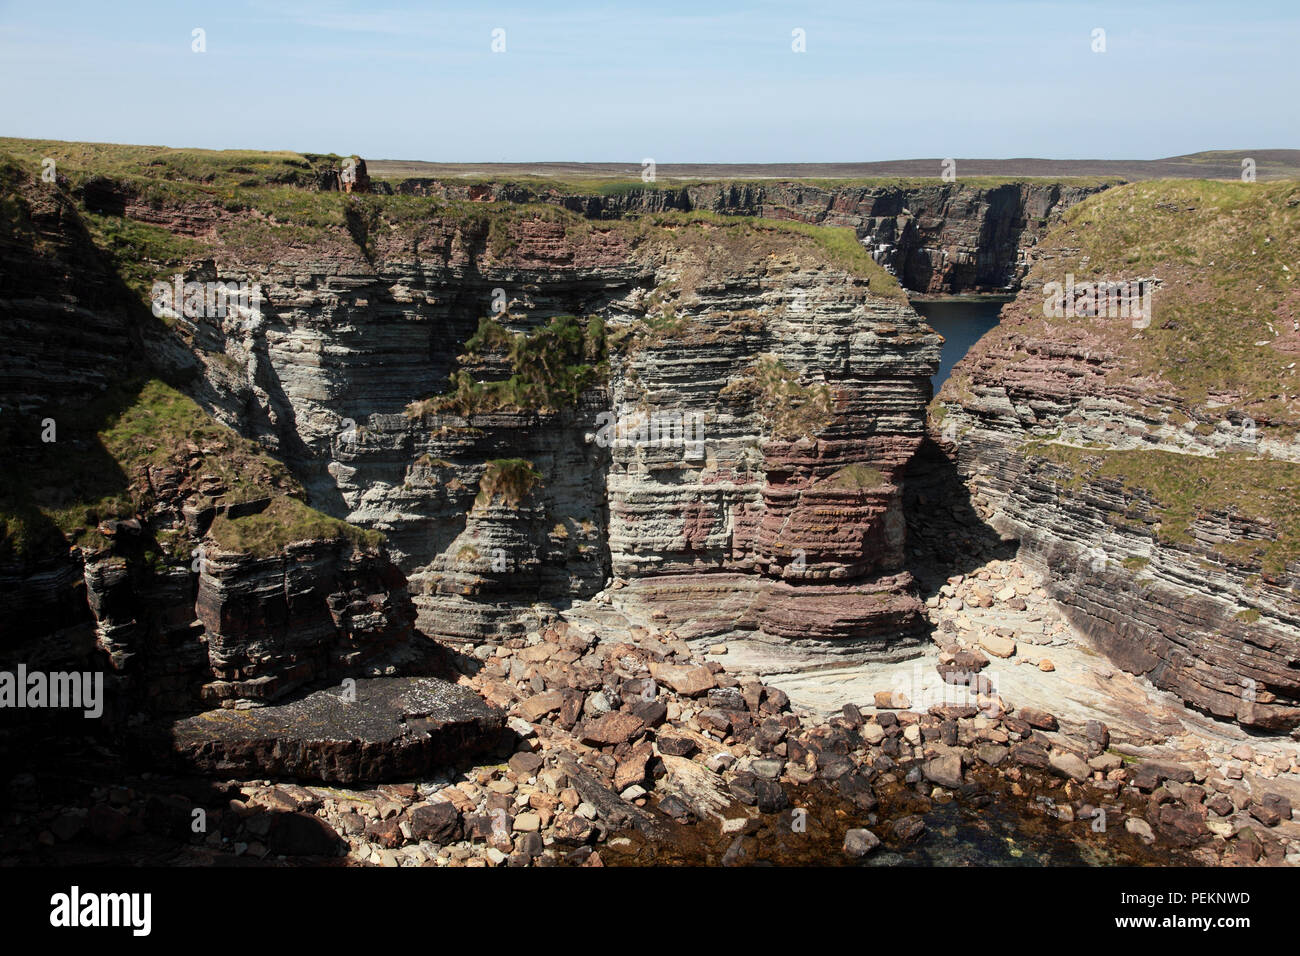 Strati geologici dal medio periodo Devoniano nelle rocce a Deerness, isole Orcadi, Scozia Foto Stock